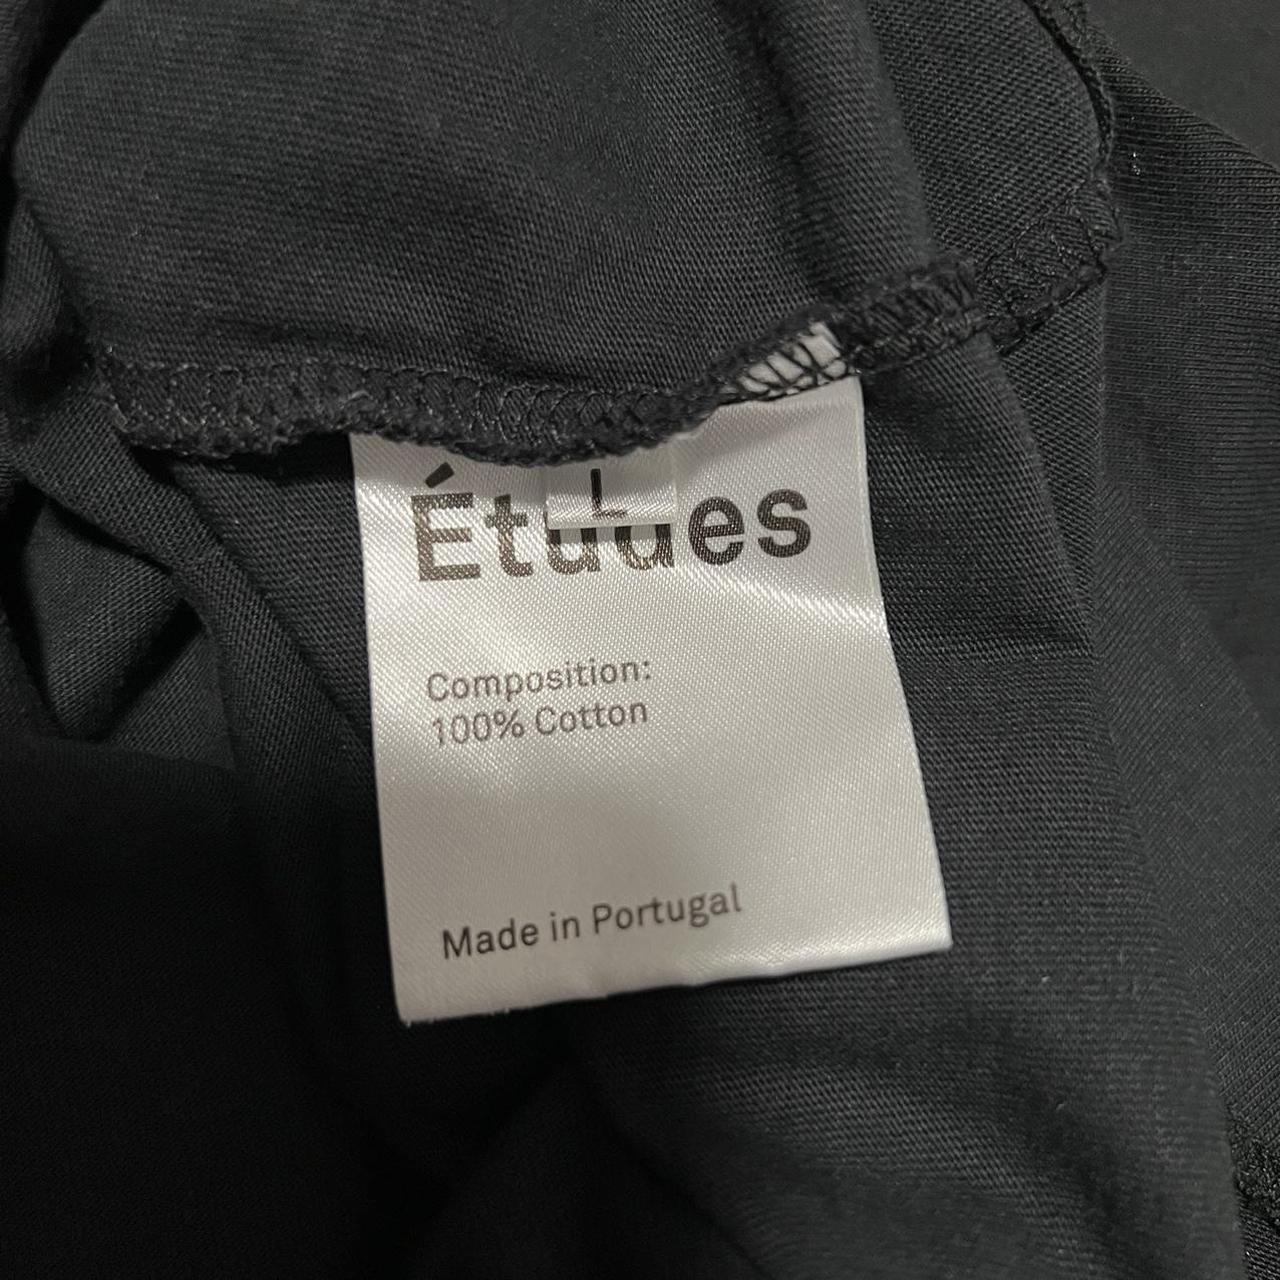 Product Image 3 - Etudes Stars Tshirt
Size Large

Good condition